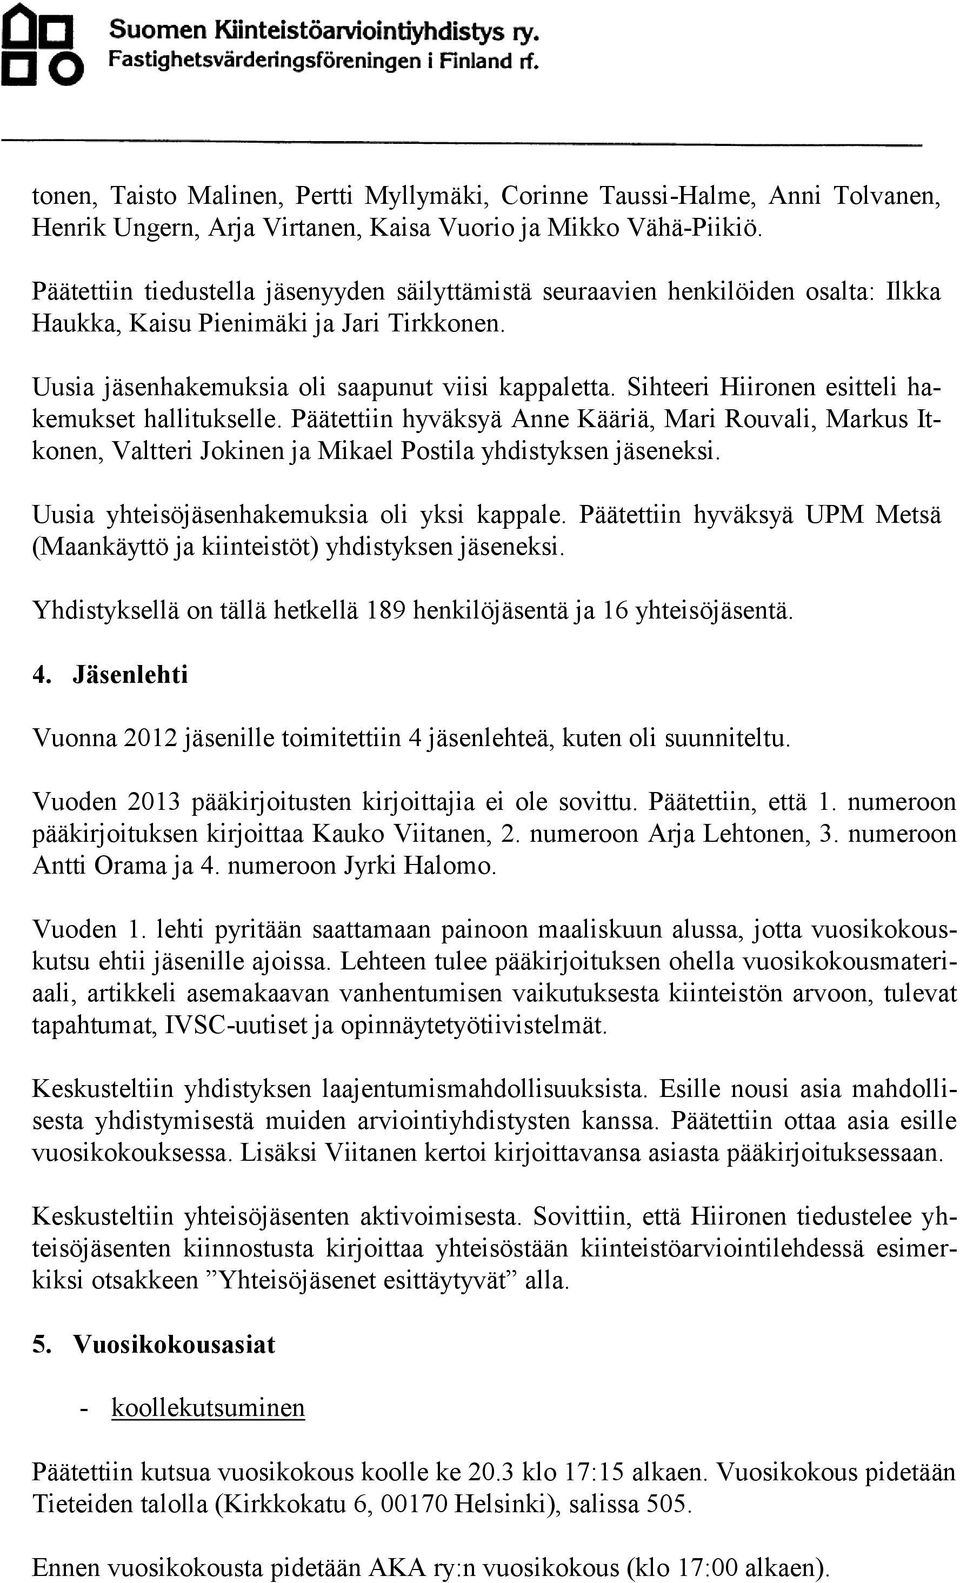 Sihteeri Hiironen esitteli hakemukset hallitukselle. Päätettiin hyväksyä Anne Kääriä, Mari Rouvali, Markus Itkonen, Valtteri Jokinen ja Mikael Postila yhdistyksen jäseneksi.